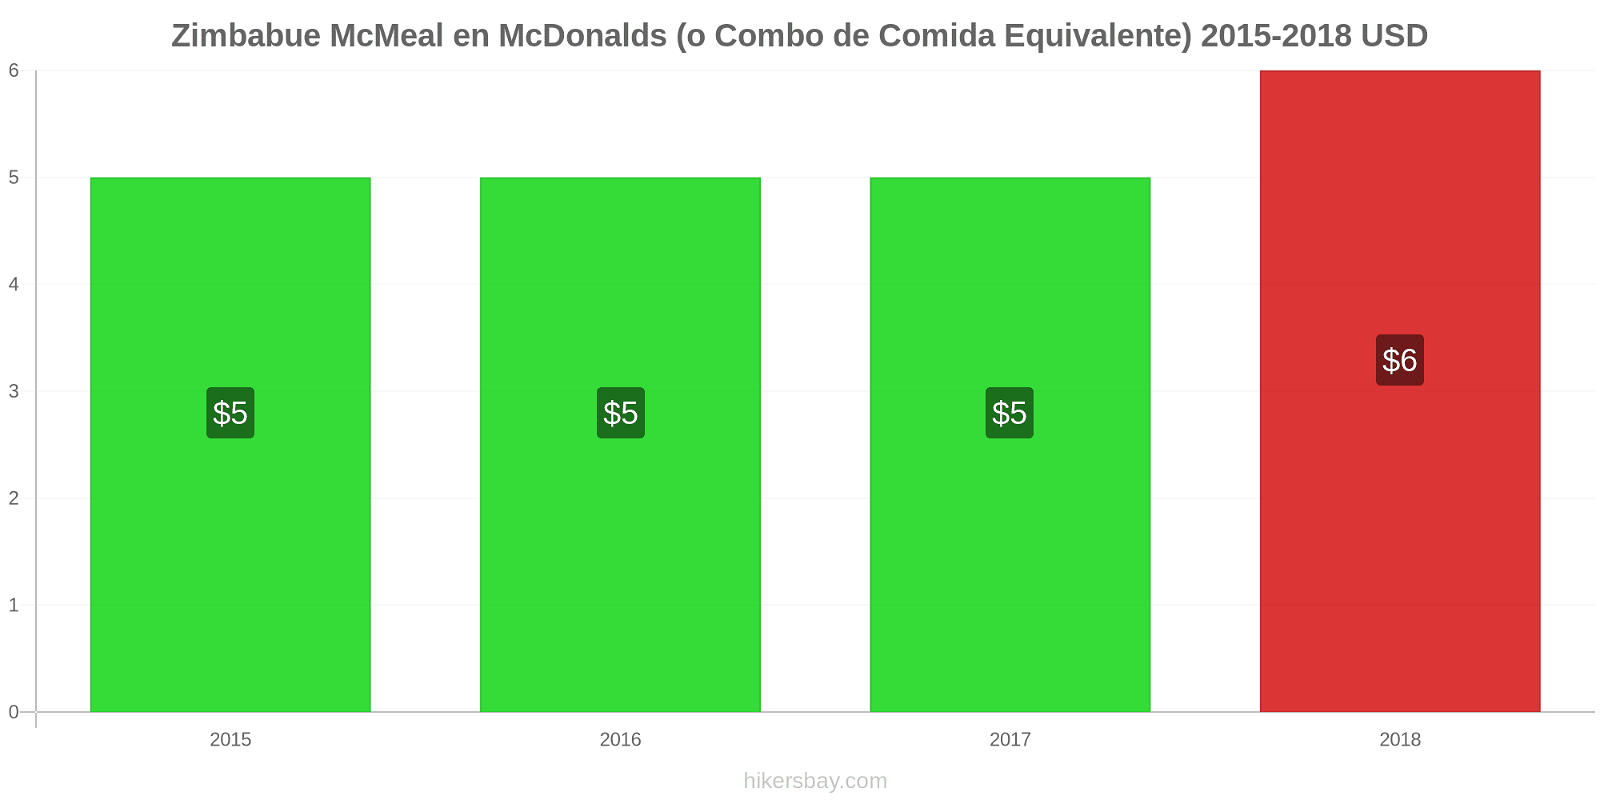 Zimbabue cambios de precios McMeal en McDonalds (o menú equivalente) hikersbay.com